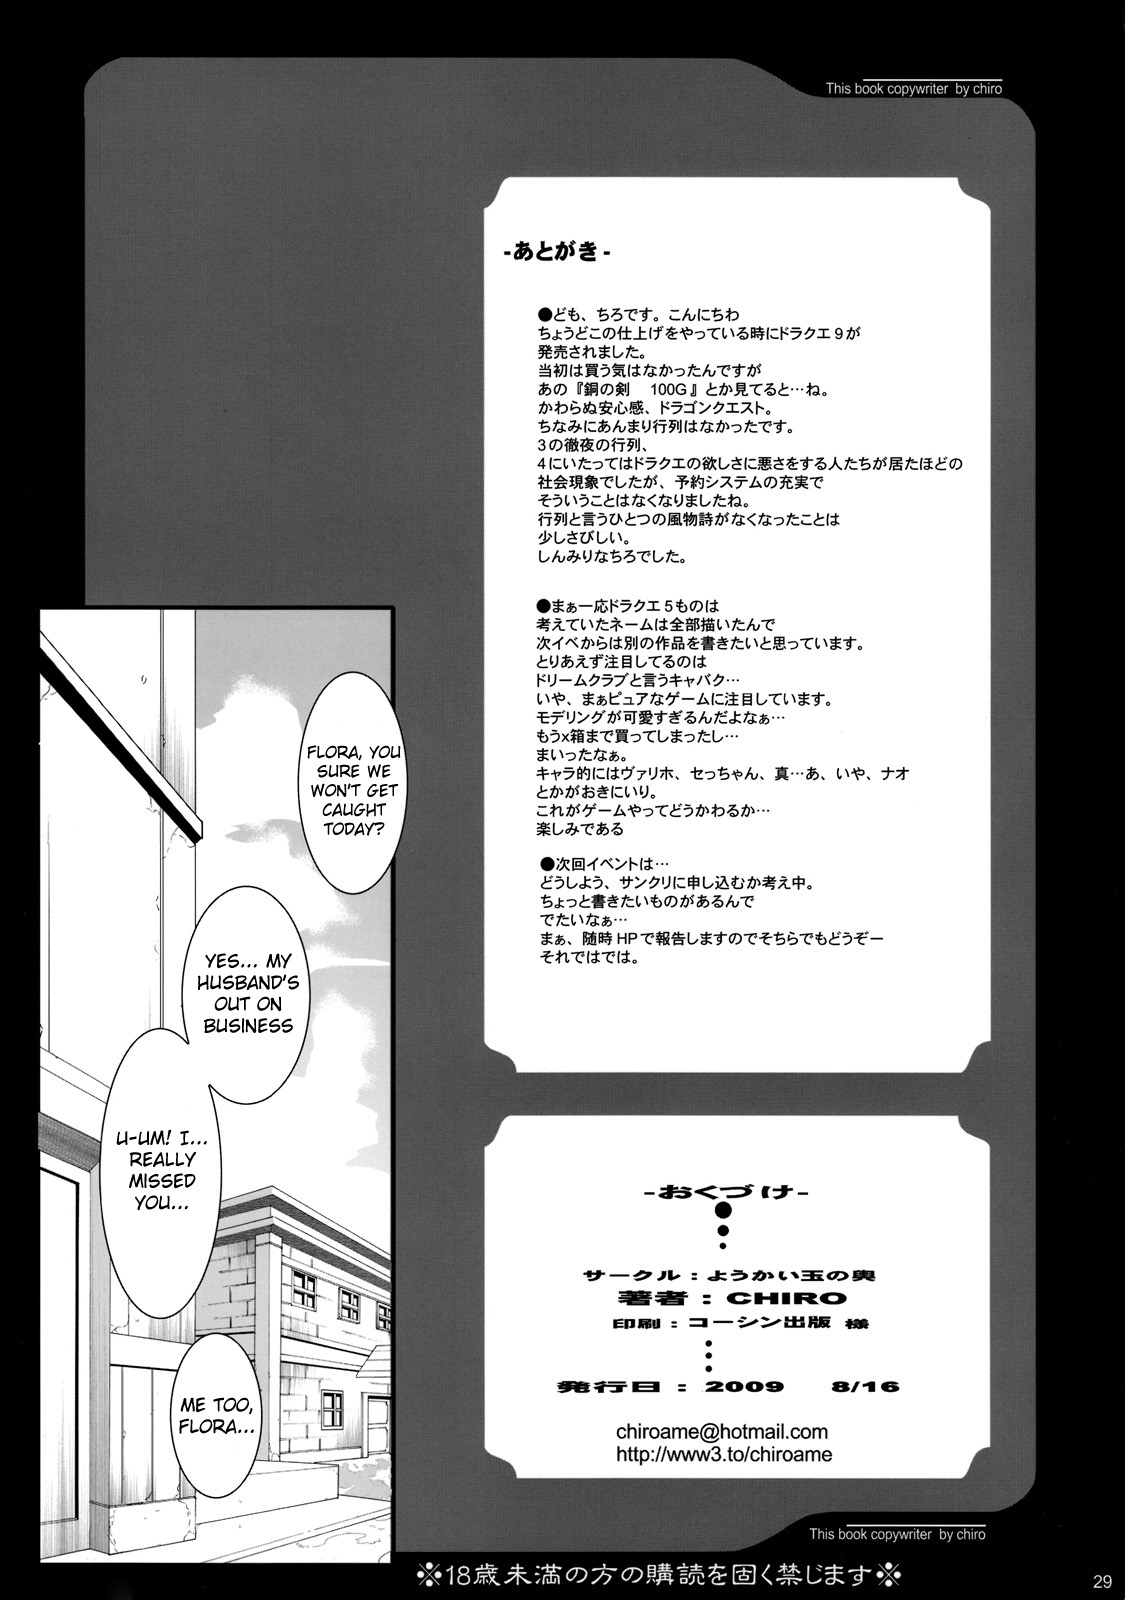 [Youkai Tamanokoshi] The Sancho Show 3 - Granbanear Oda [Eng] (Dragon Quest 5) {doujin-moe.us} 